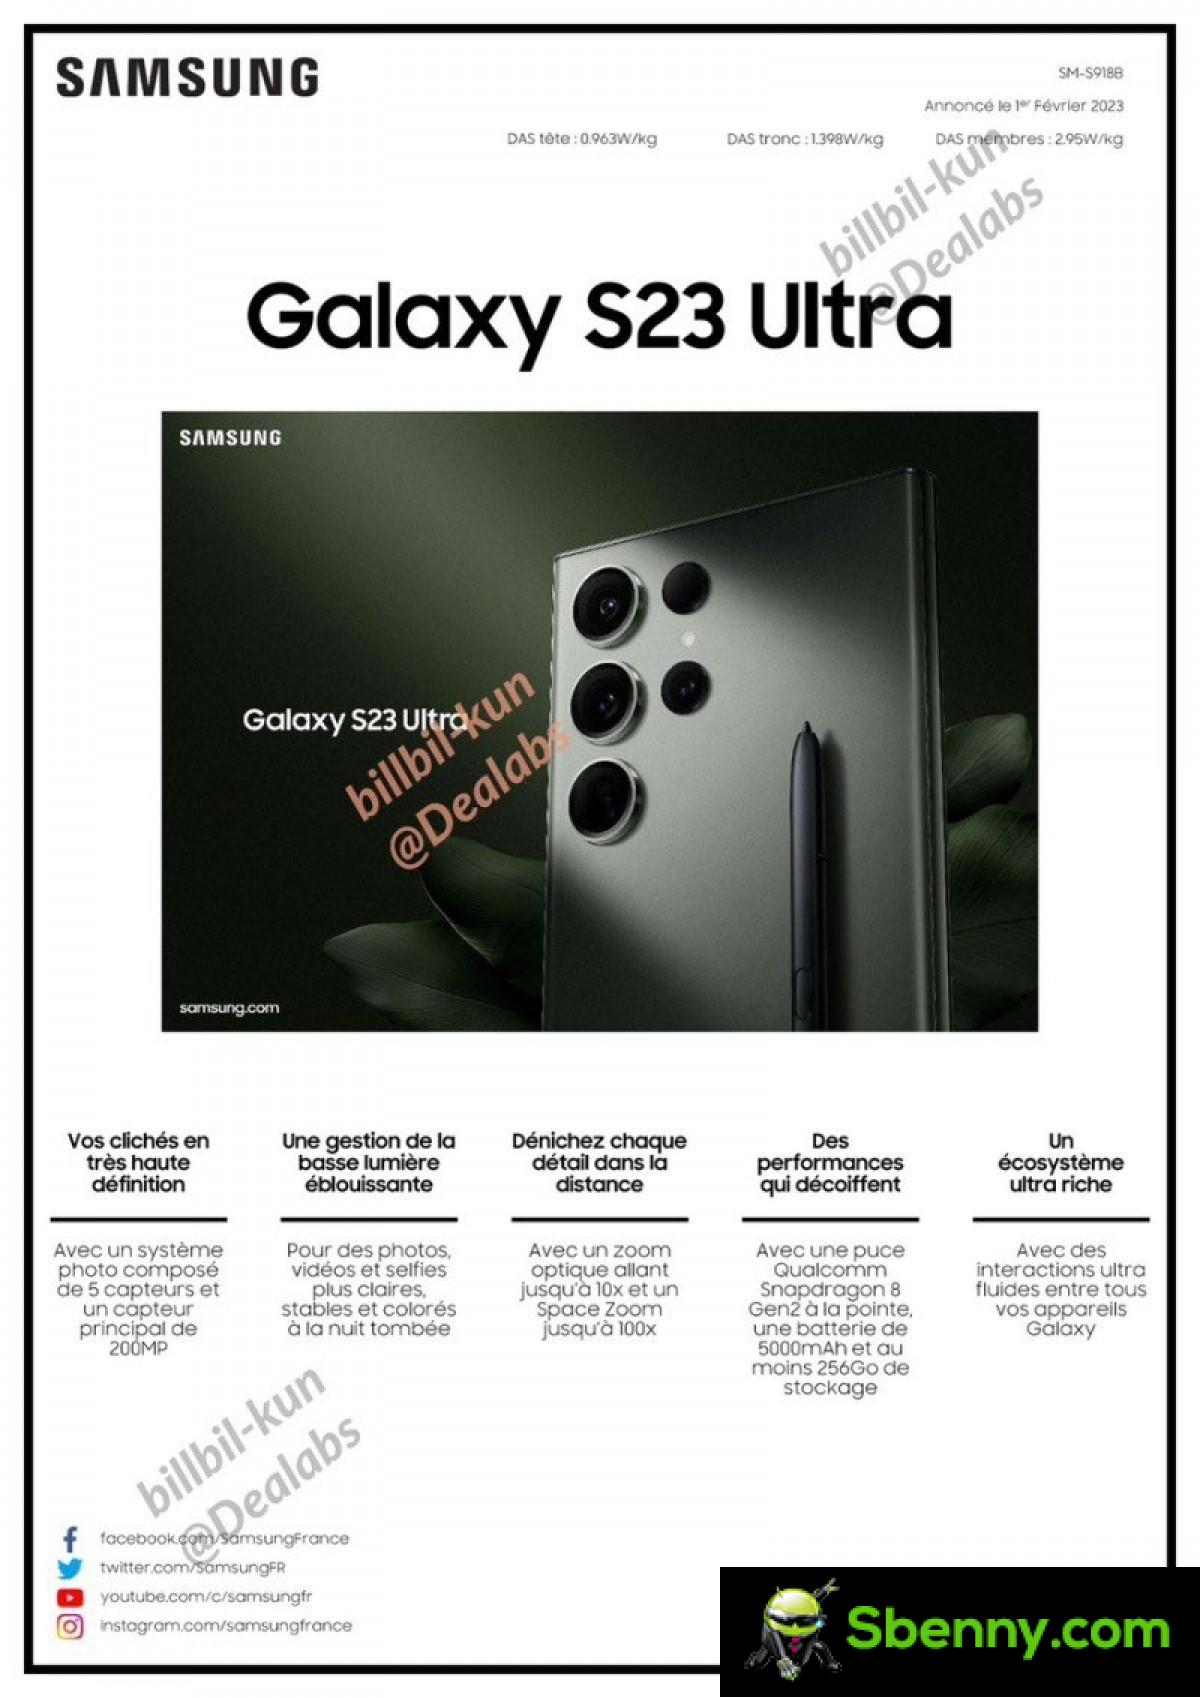 Das technische Datenblatt des Samsung Galaxy S23 Ultra ist vollständig durchgesickert